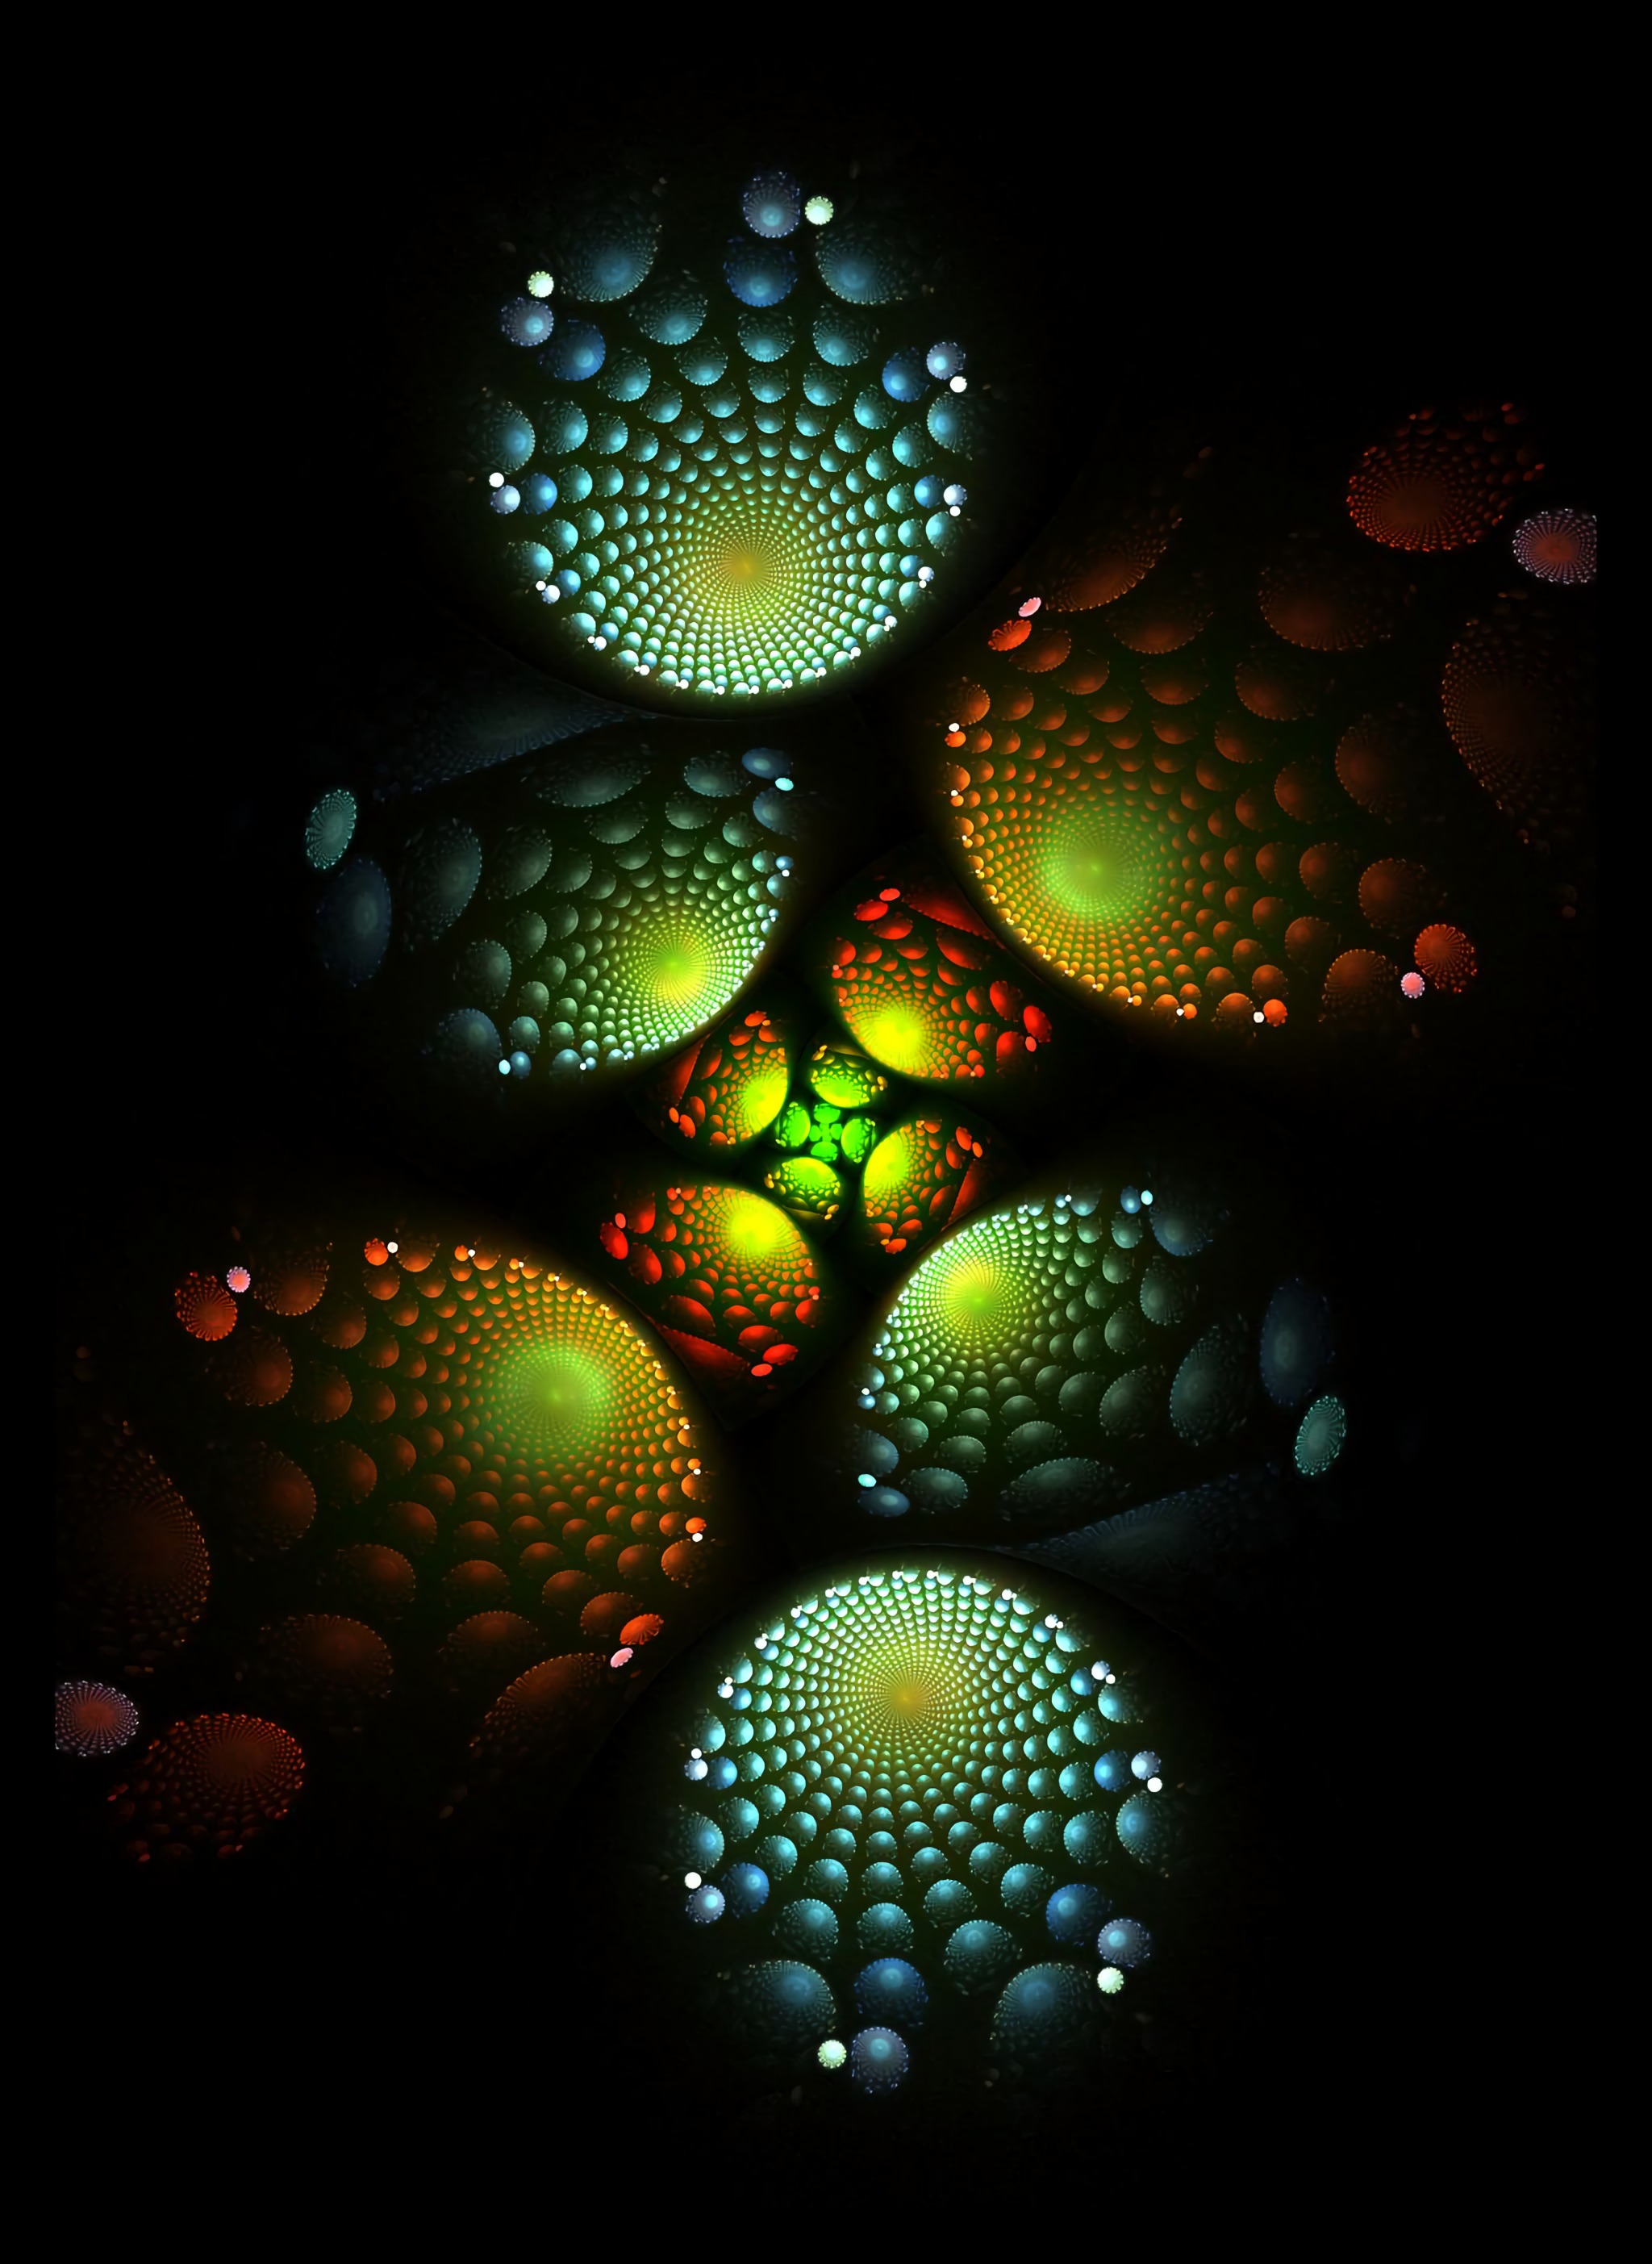 fractal, abstract, dark, glow, spiral, spirals UHD